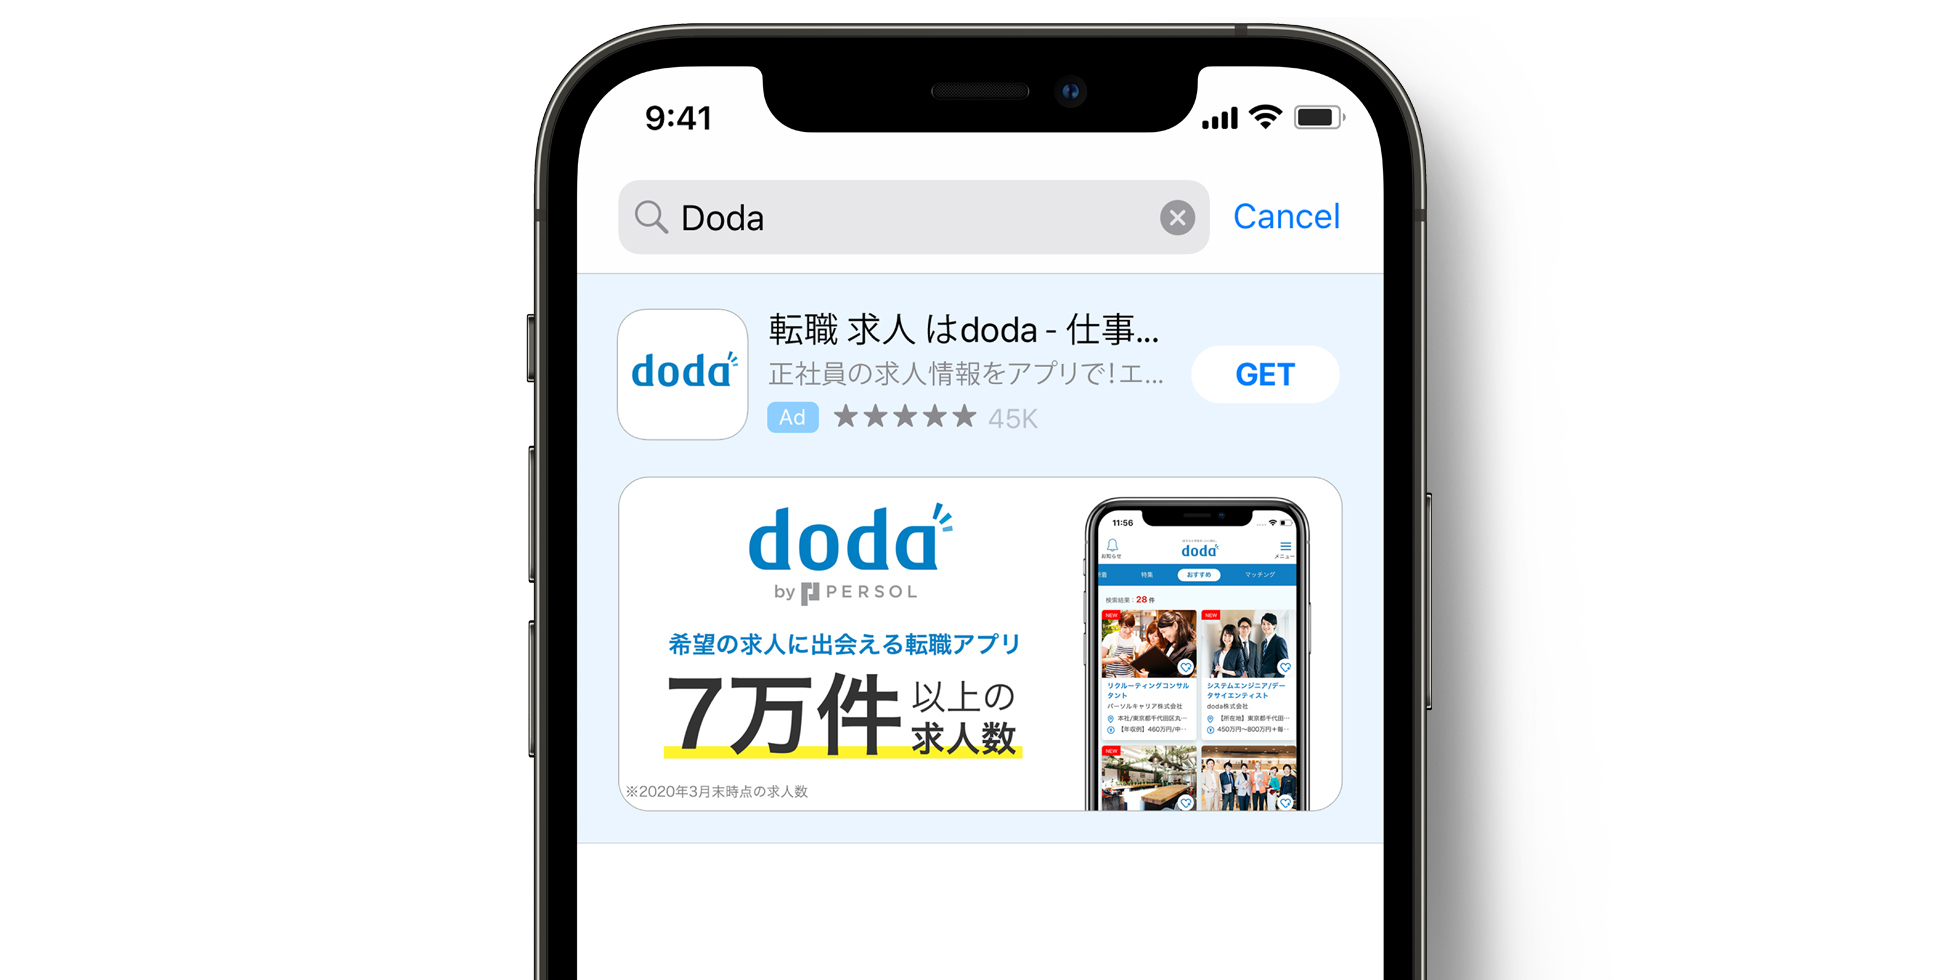 Реклама doda в App Store